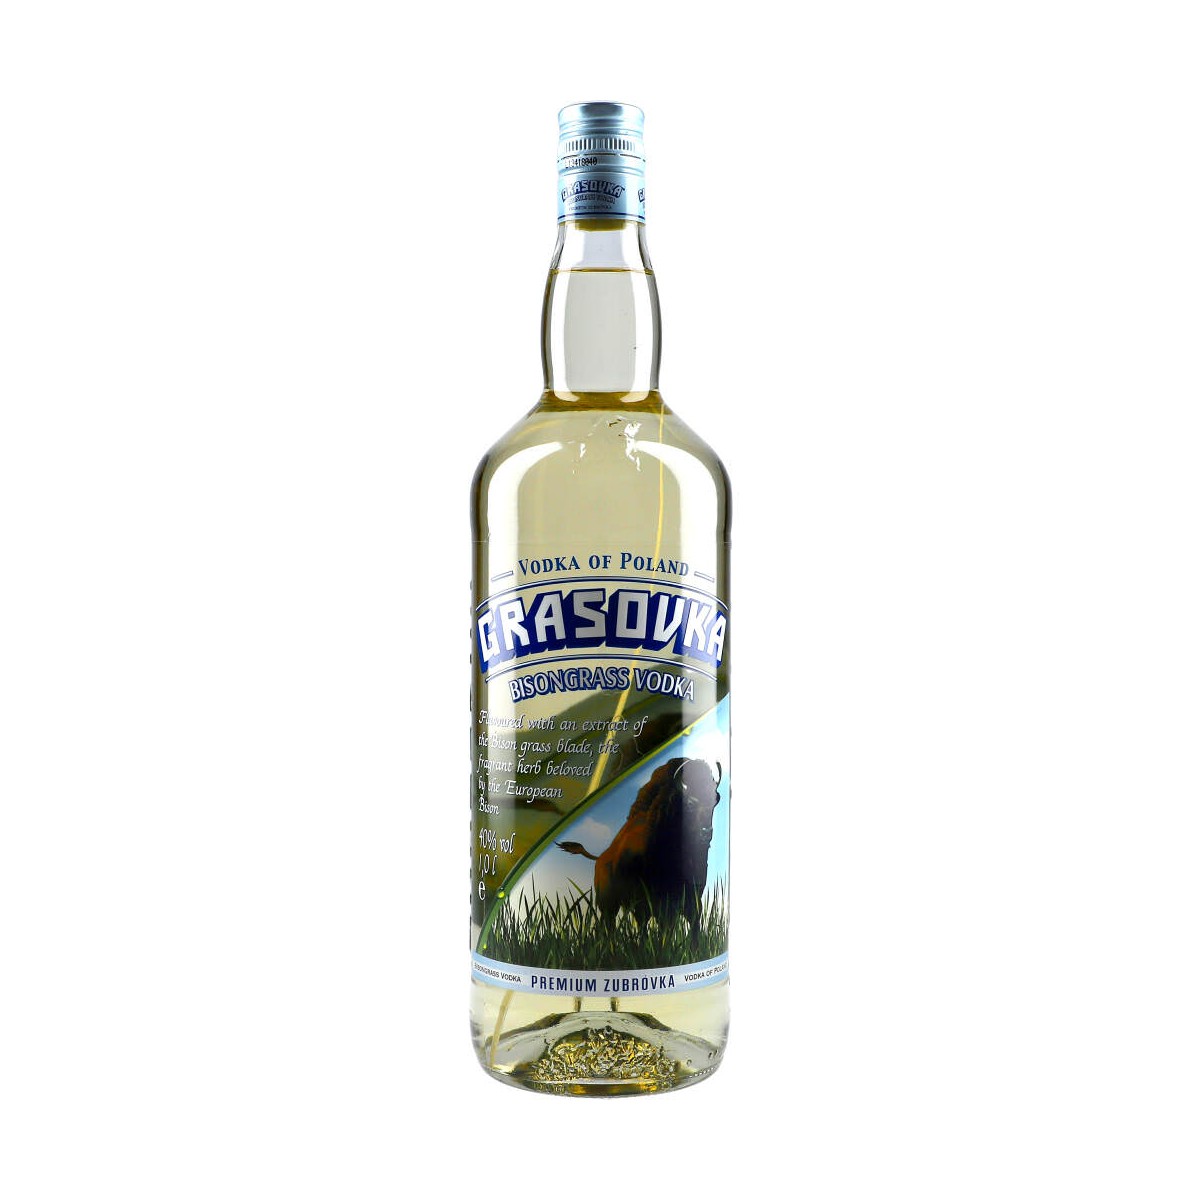 Grasovka Bisongrass 100cl 38% Vodka